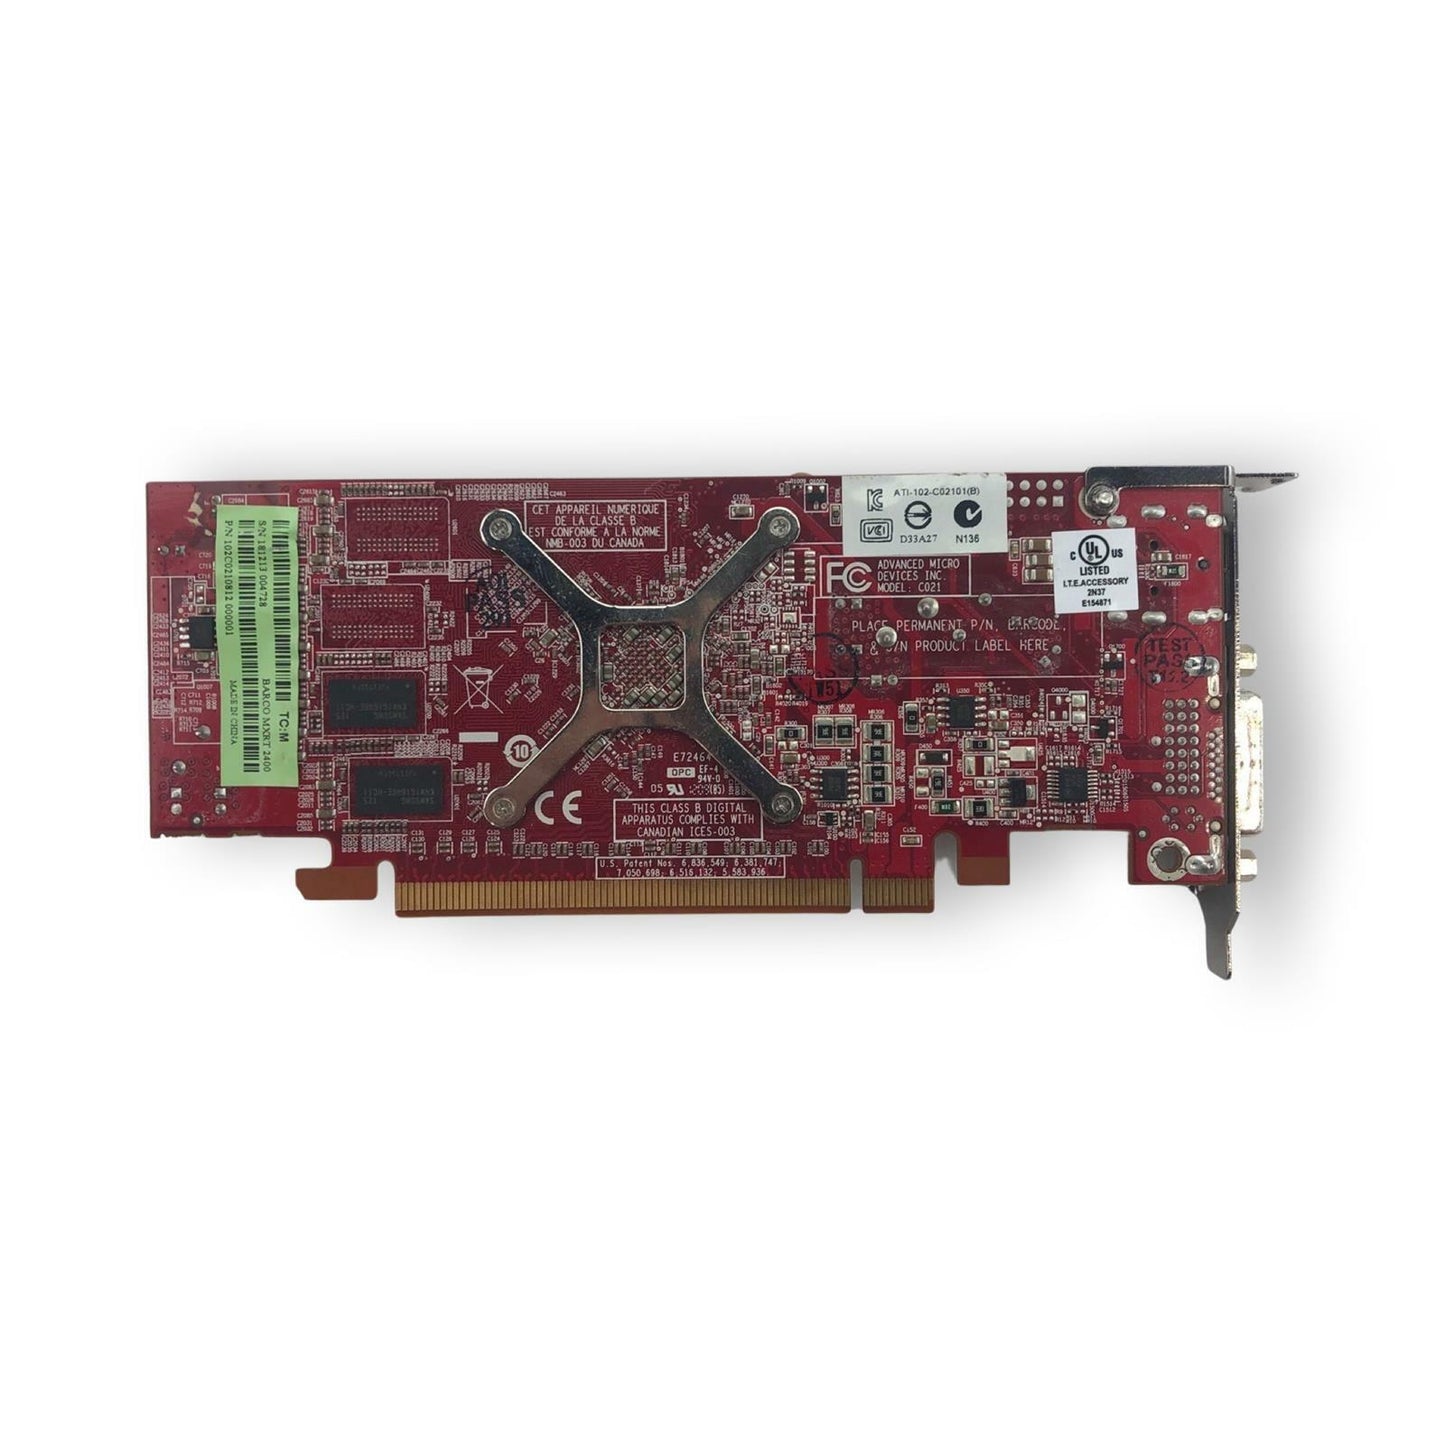 Barco MXRT-2400 ATI FirePro 3D 512MB DDR3 PCIe DVI 71213830W0G Video Card